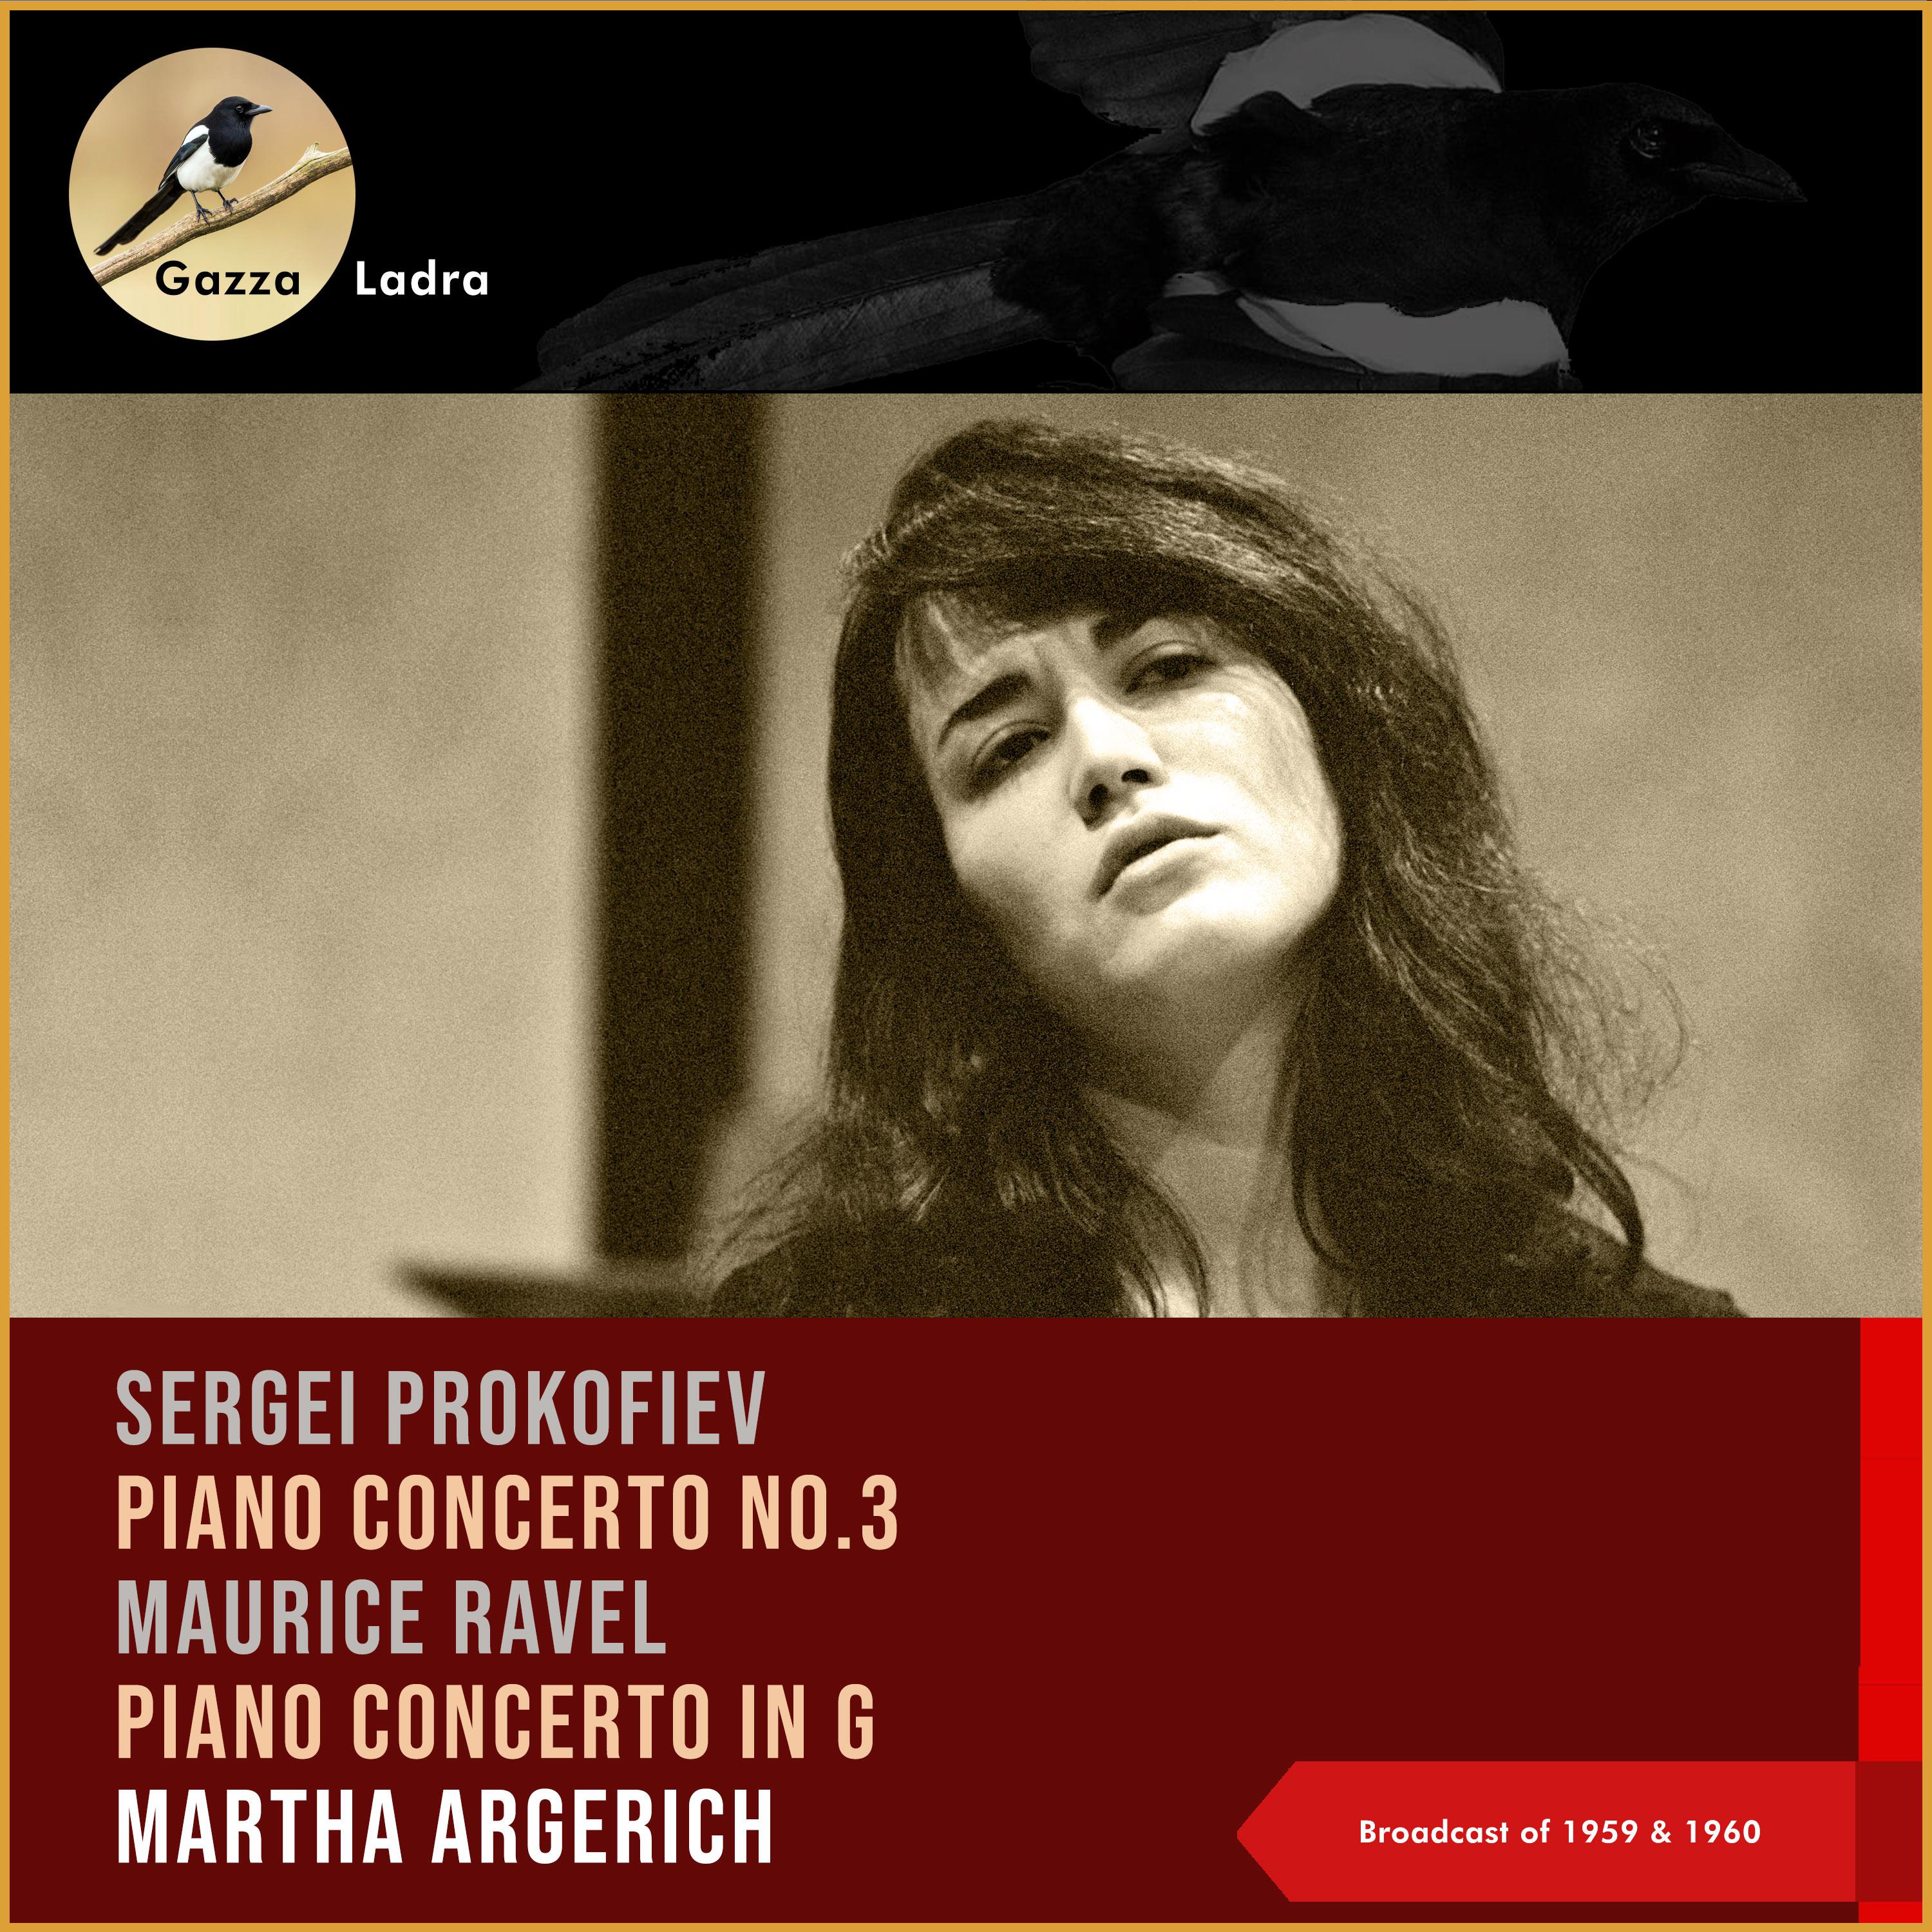 Fulvio Vernizzi - Piano Concerto No.3, III. Allegro ma non troppo